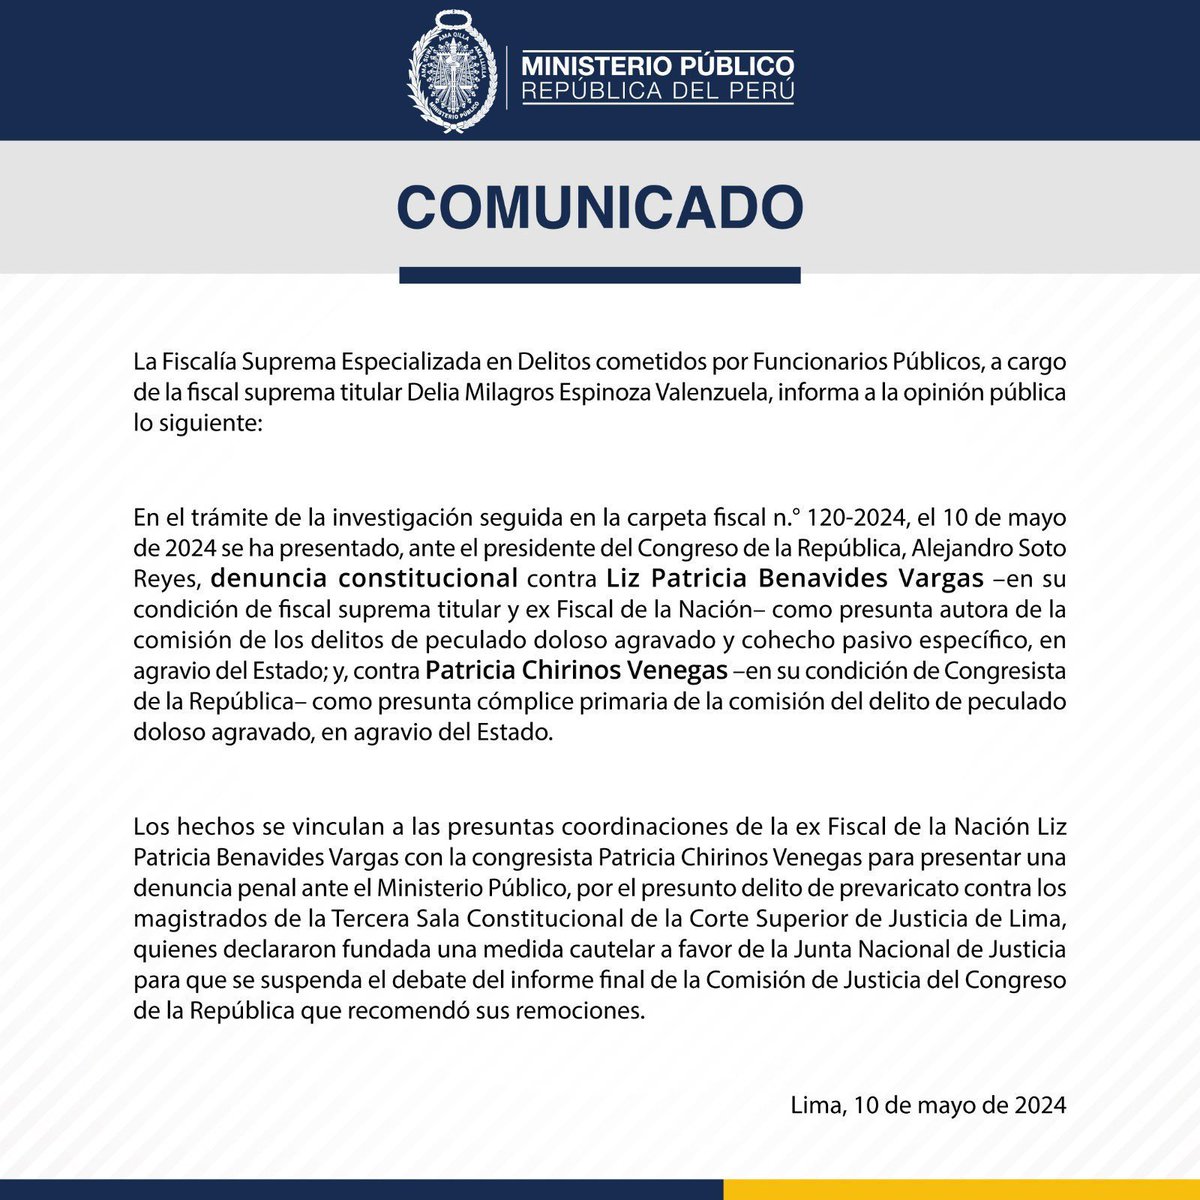 #AlertaLegislativa: Fiscalía presenta denuncia constitucional contra Patricia Benavides y contra la congresista Patricia Chirinos (#AvanzaPaís).